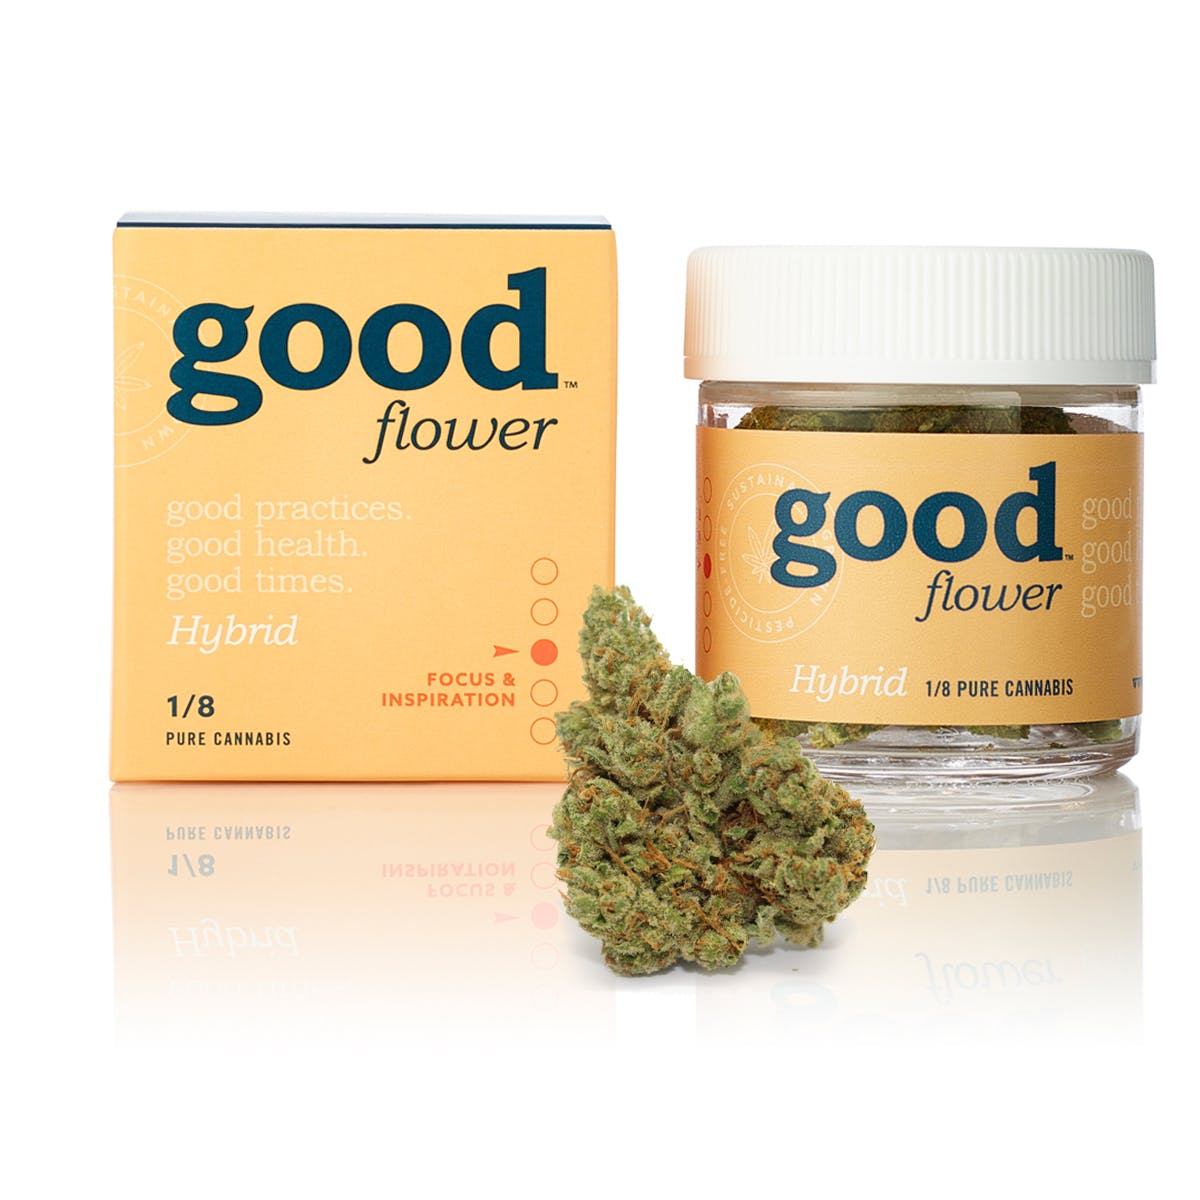 goodflower: Hybrid